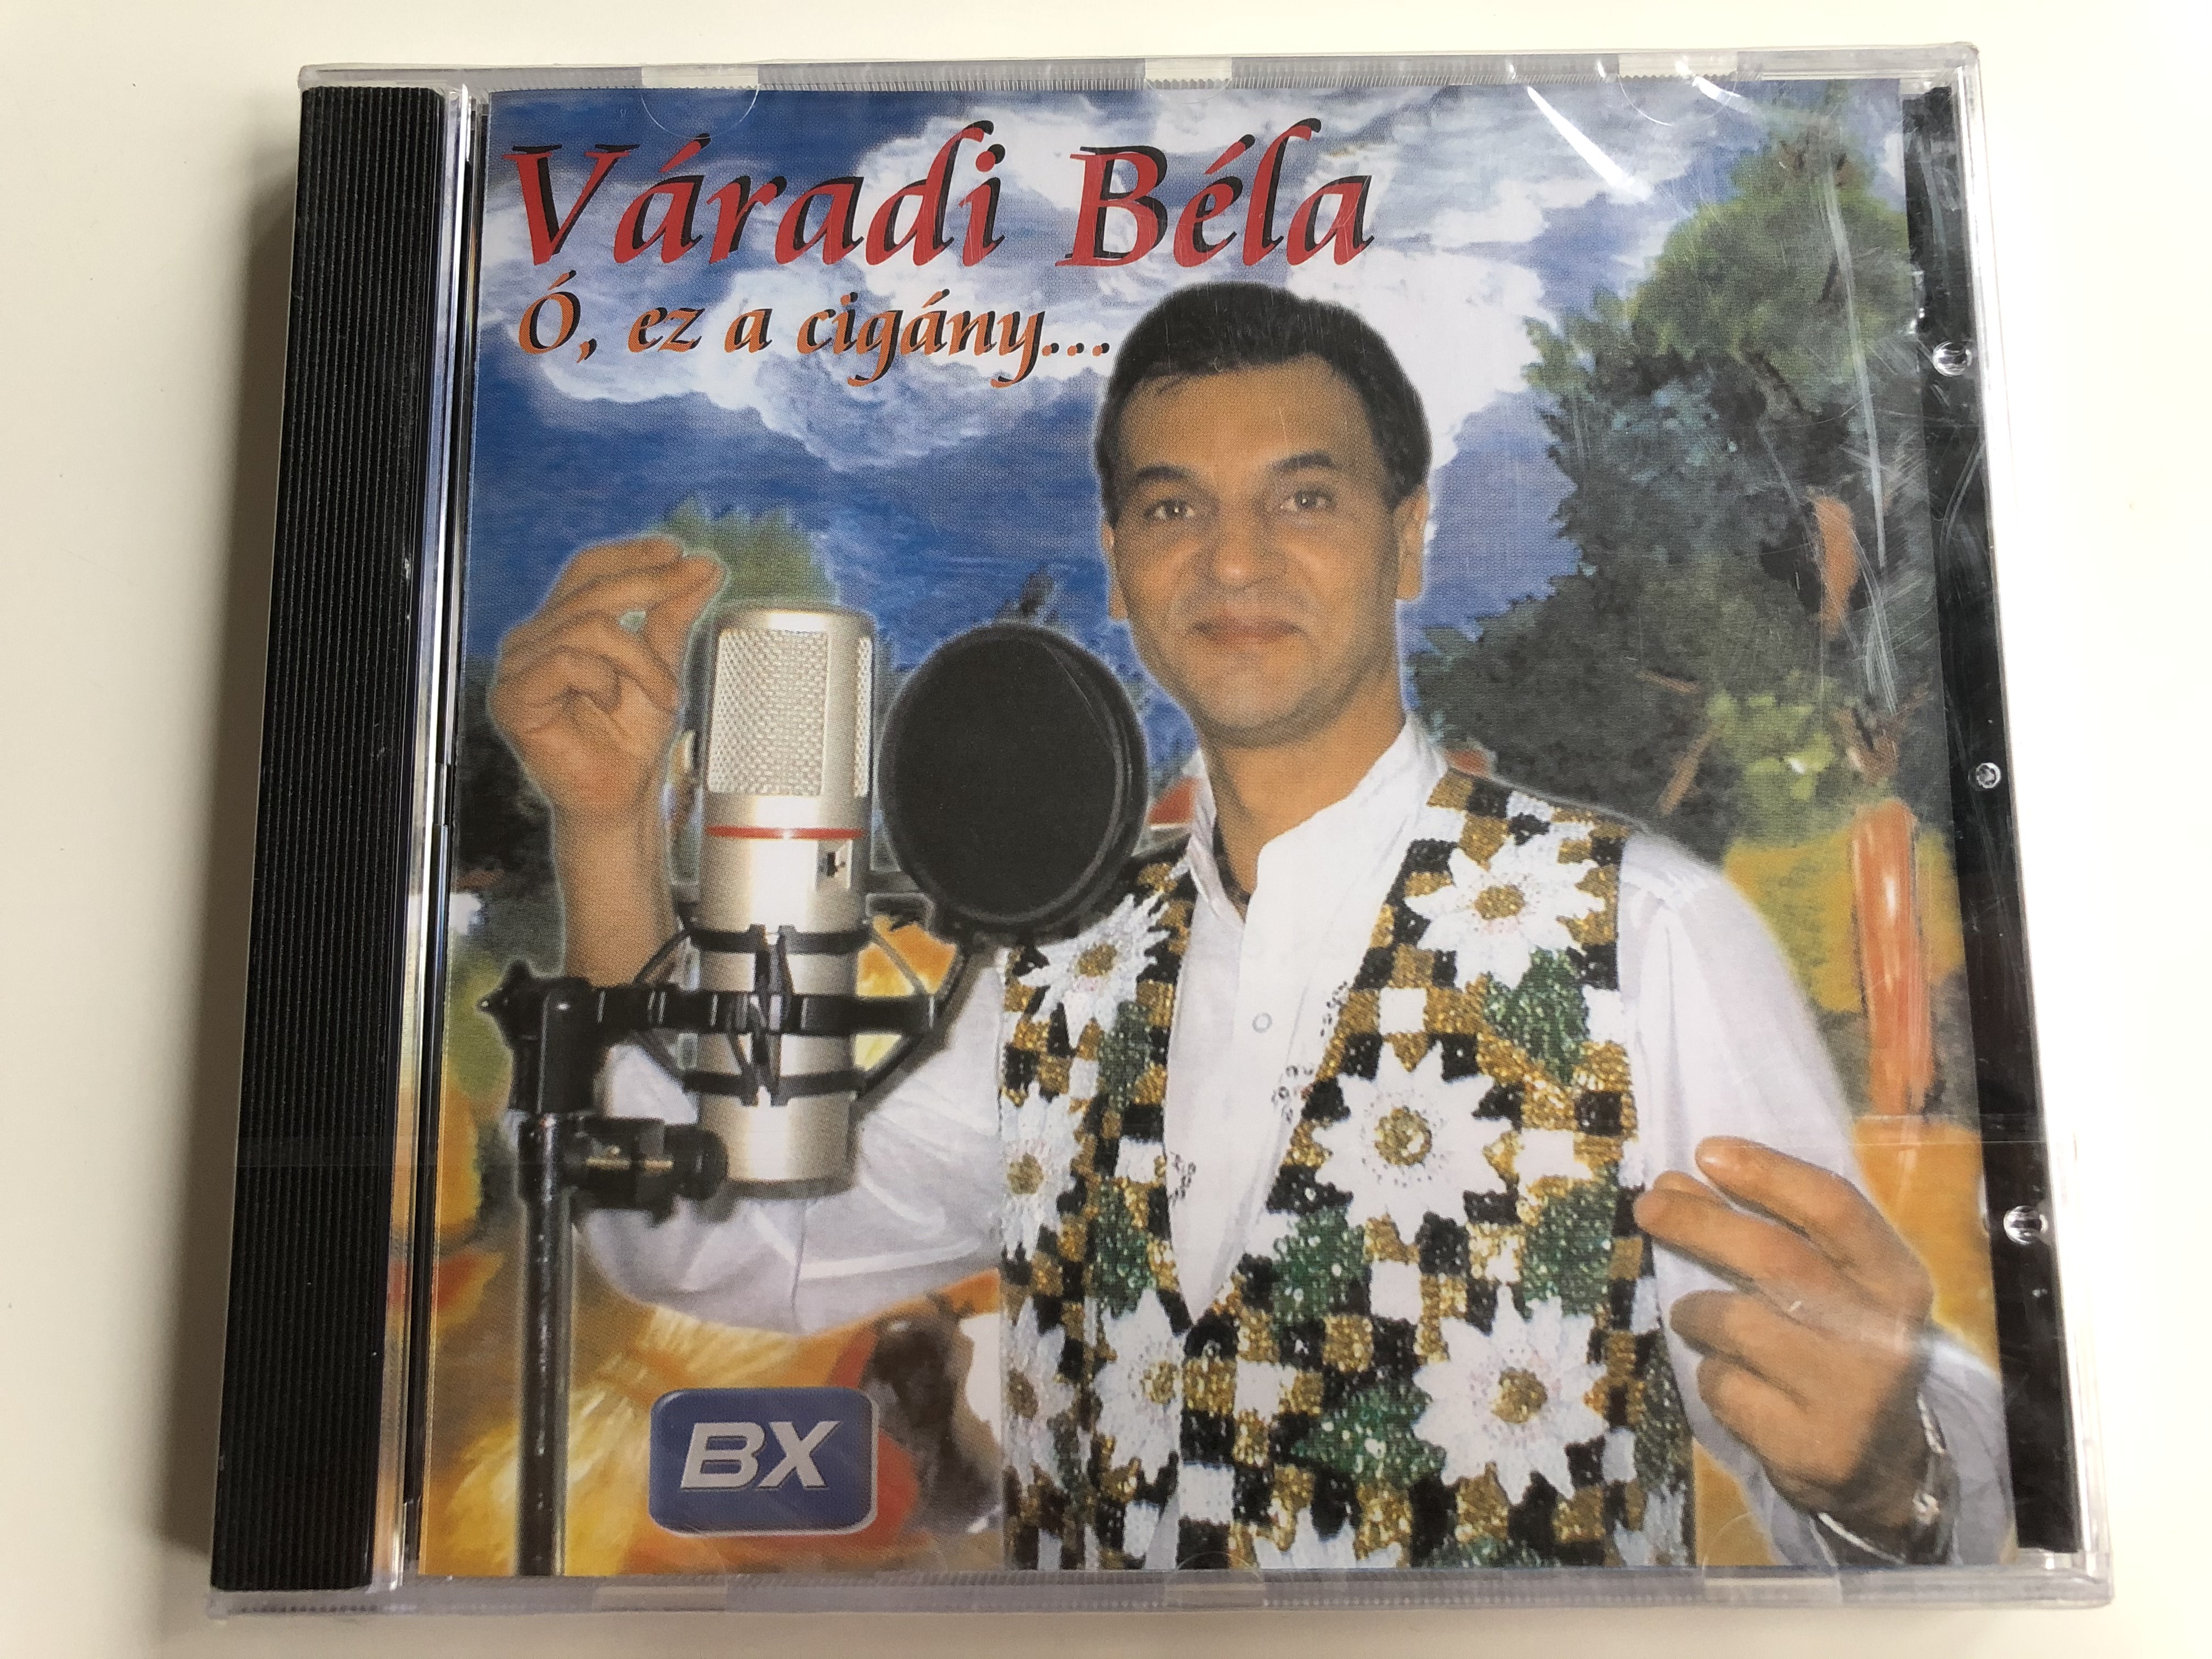 v-radi-b-la-ez-a-cig-ny...-bx-kiad-audio-cd-2005-bx-04001-1-.jpg